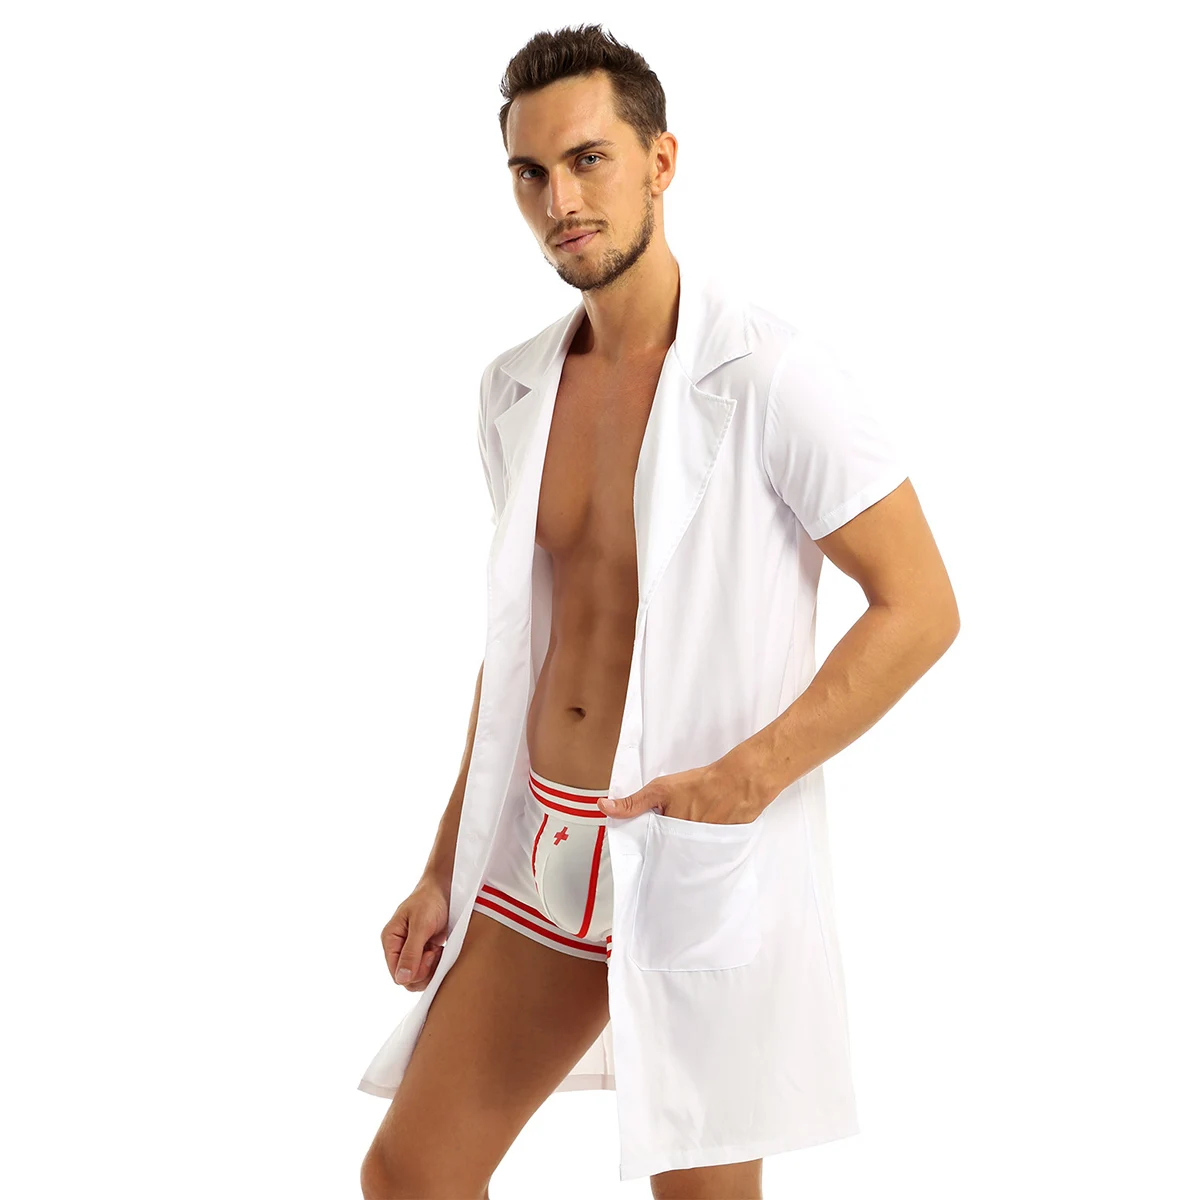 Сексуальный костюм для Хэллоуина мужские доктор игра в медсестру эротическая форма наряд белое пальто с трусов-боксеров Сисси Косплэй сексуальное нижнее белье для женщин